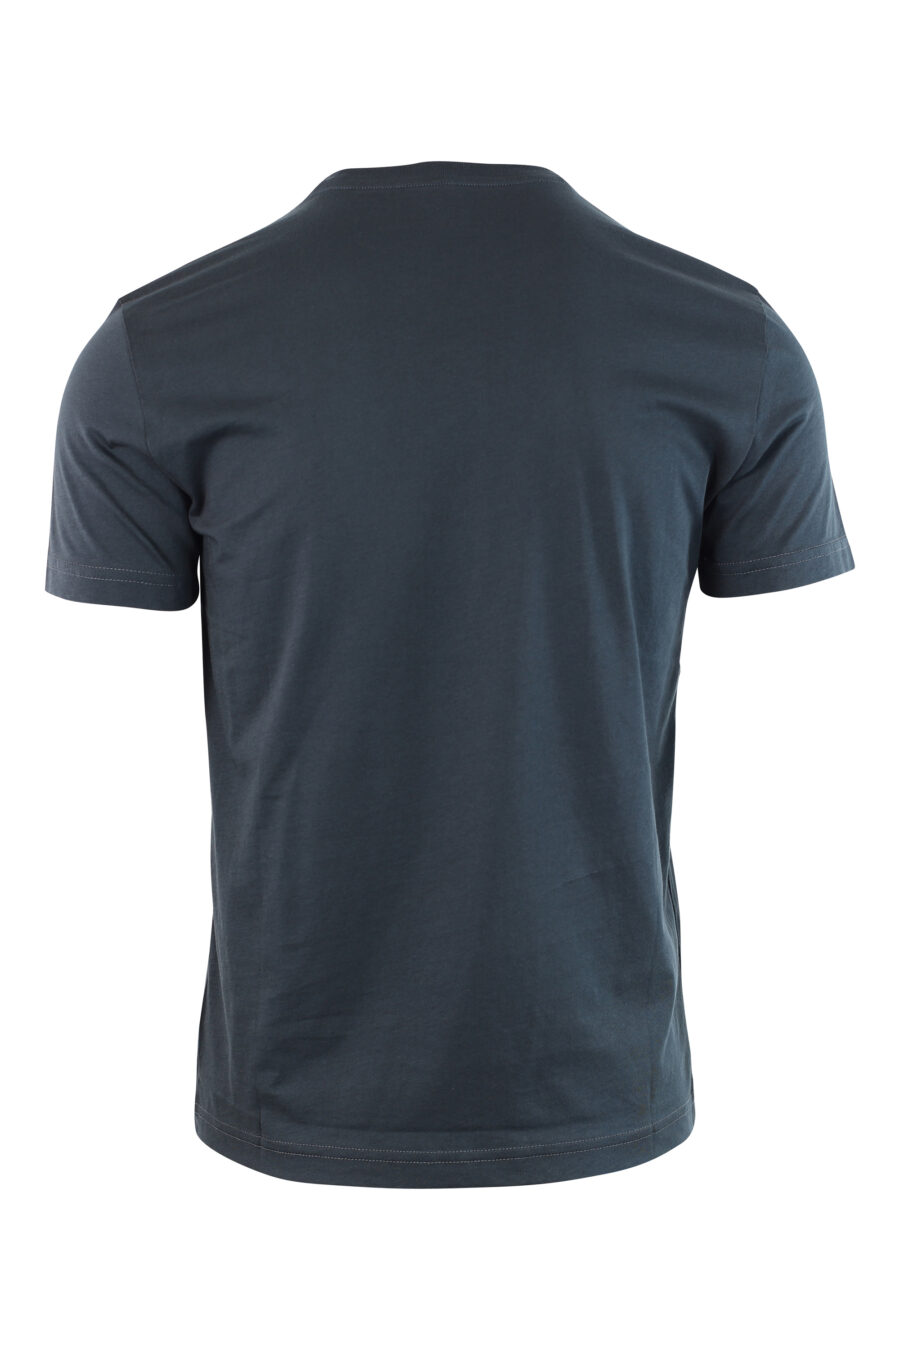 T-shirt azul com mini crachá de borracha - IMG 3768